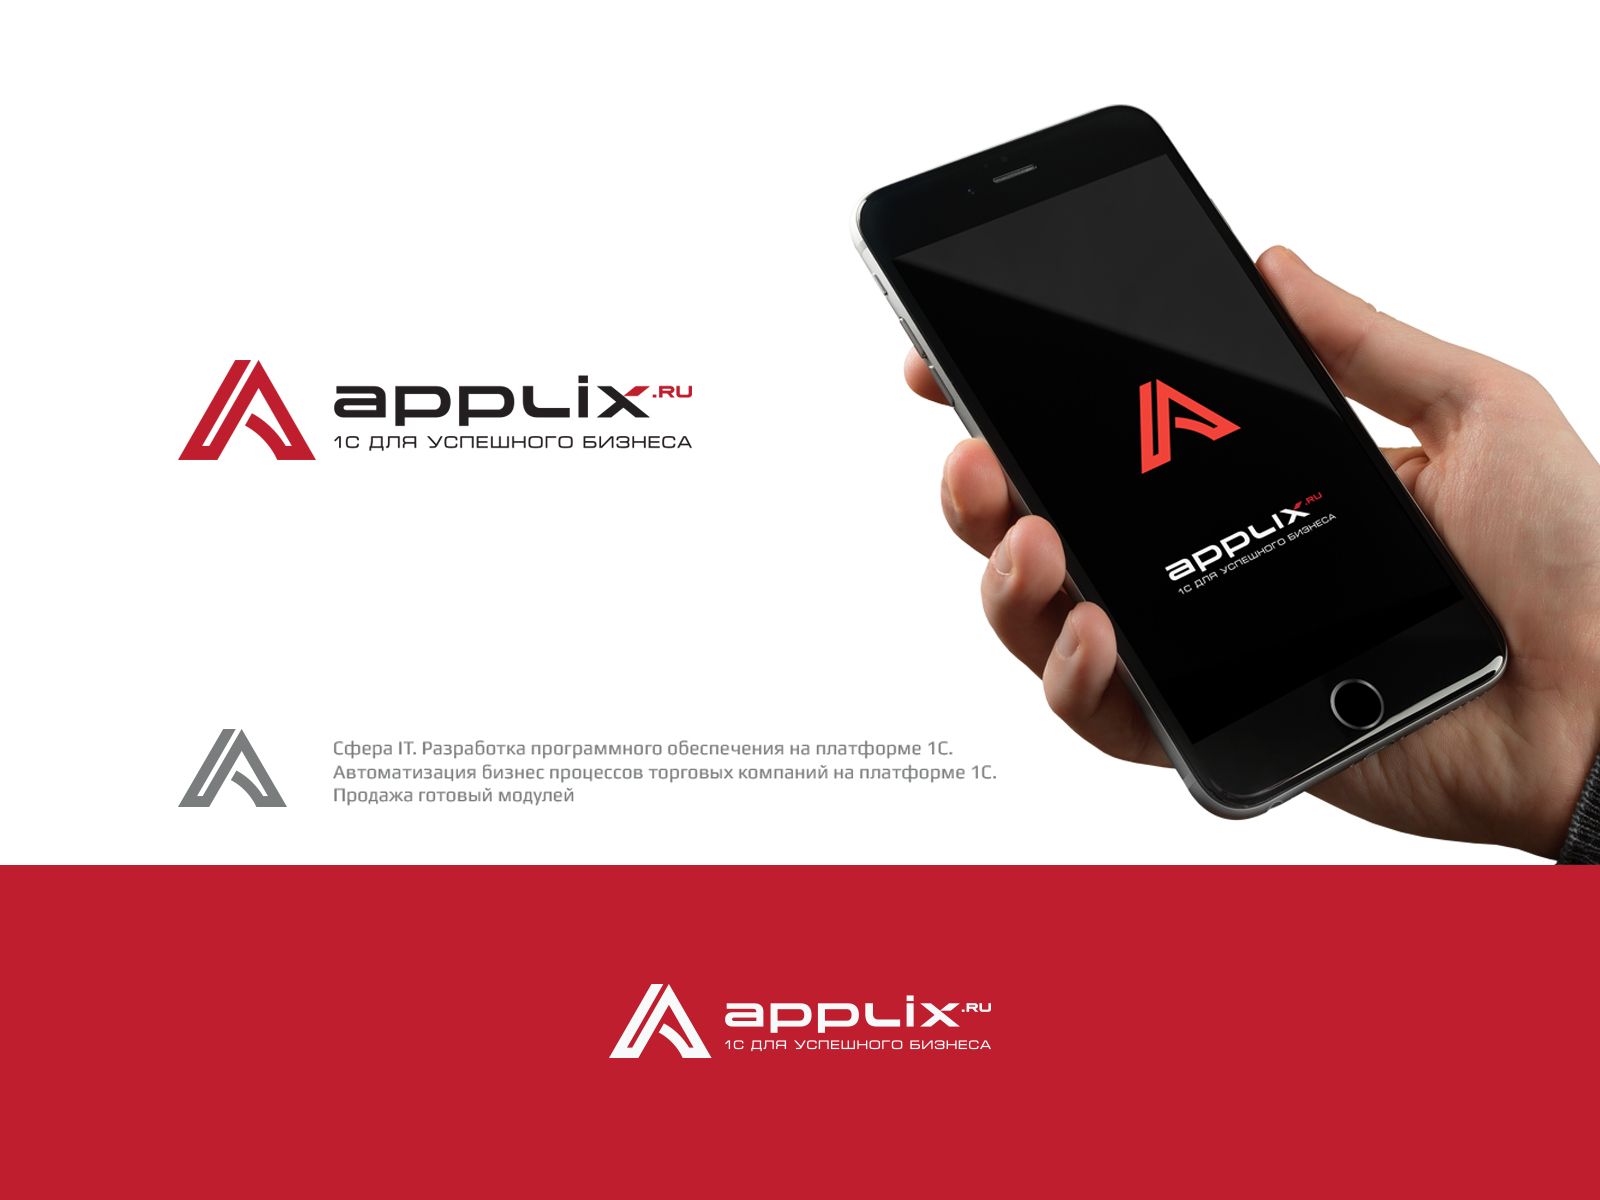 Лого и фирменный стиль для applix.ru / APPLIX.RU - дизайнер U4po4mak